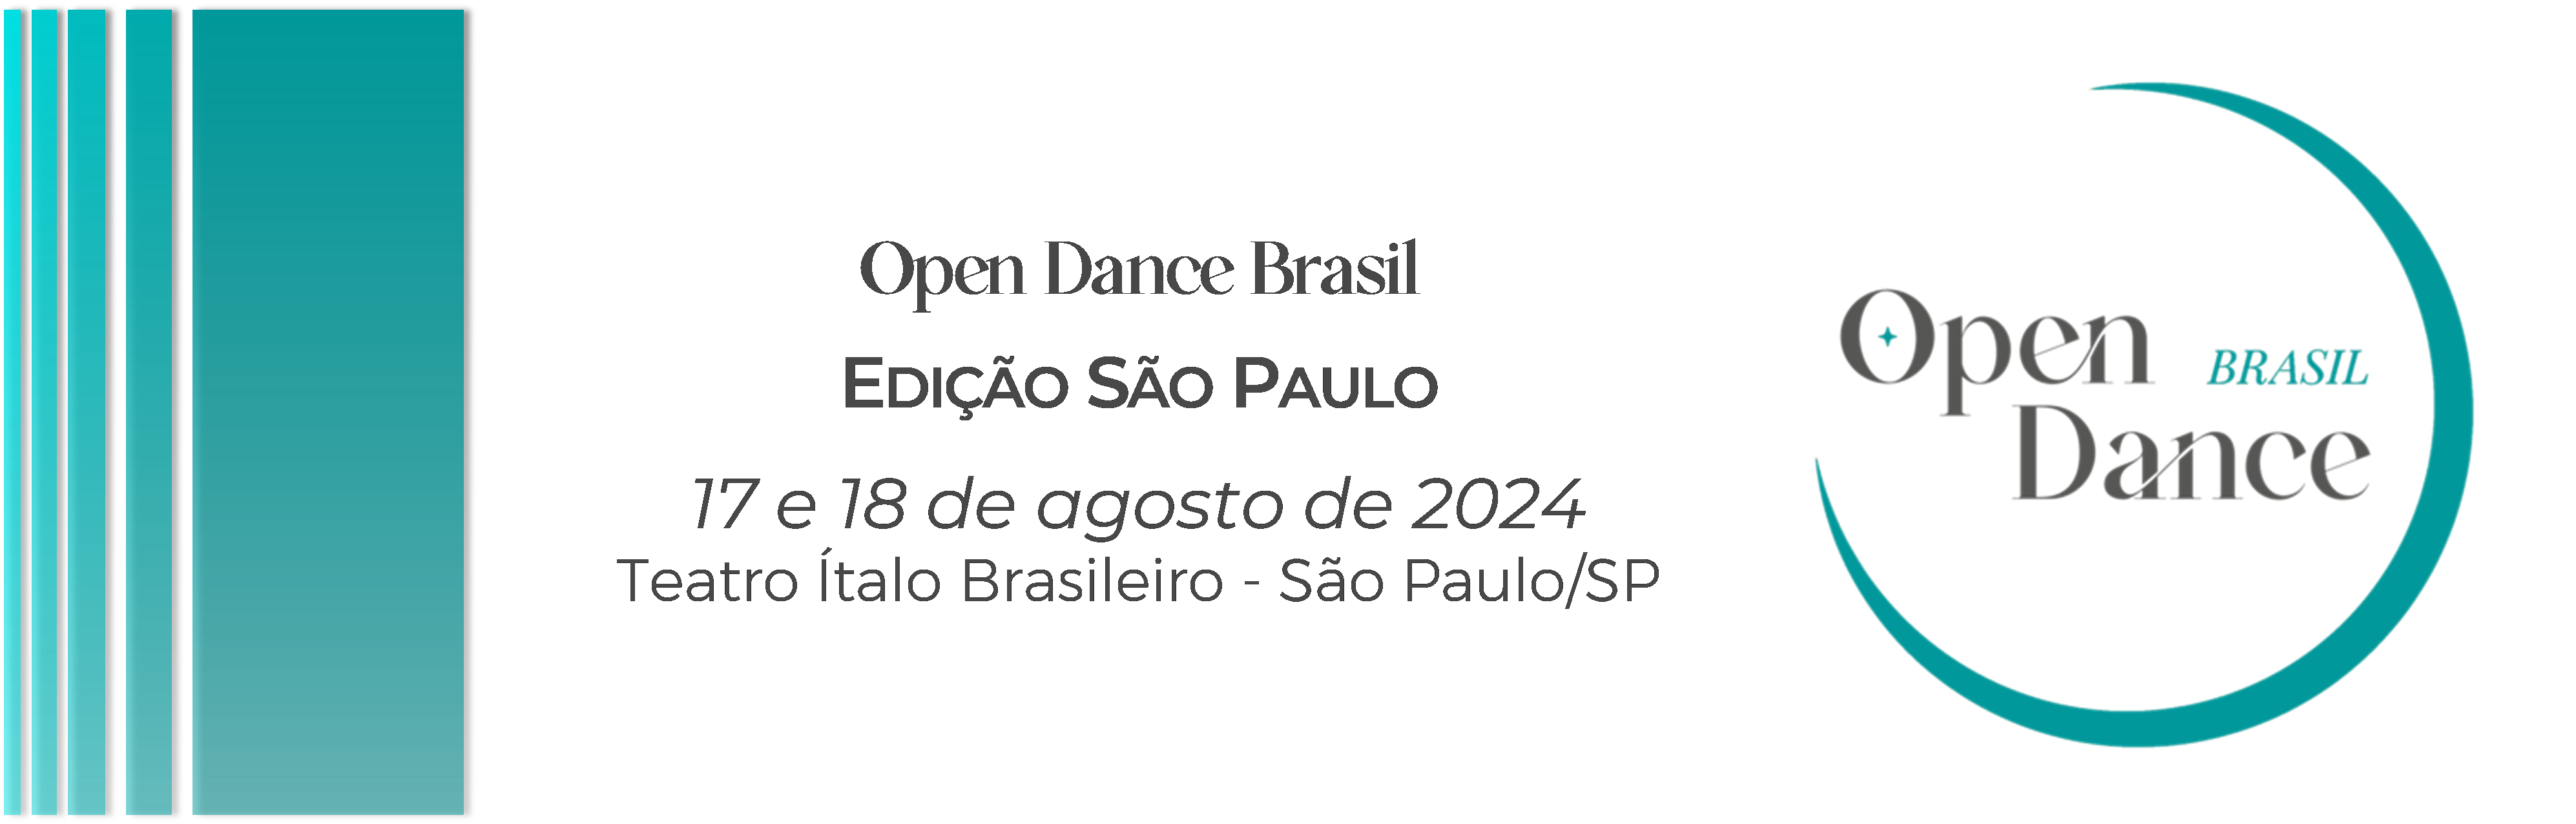 Open Dance Brasil - Edição SP 2024